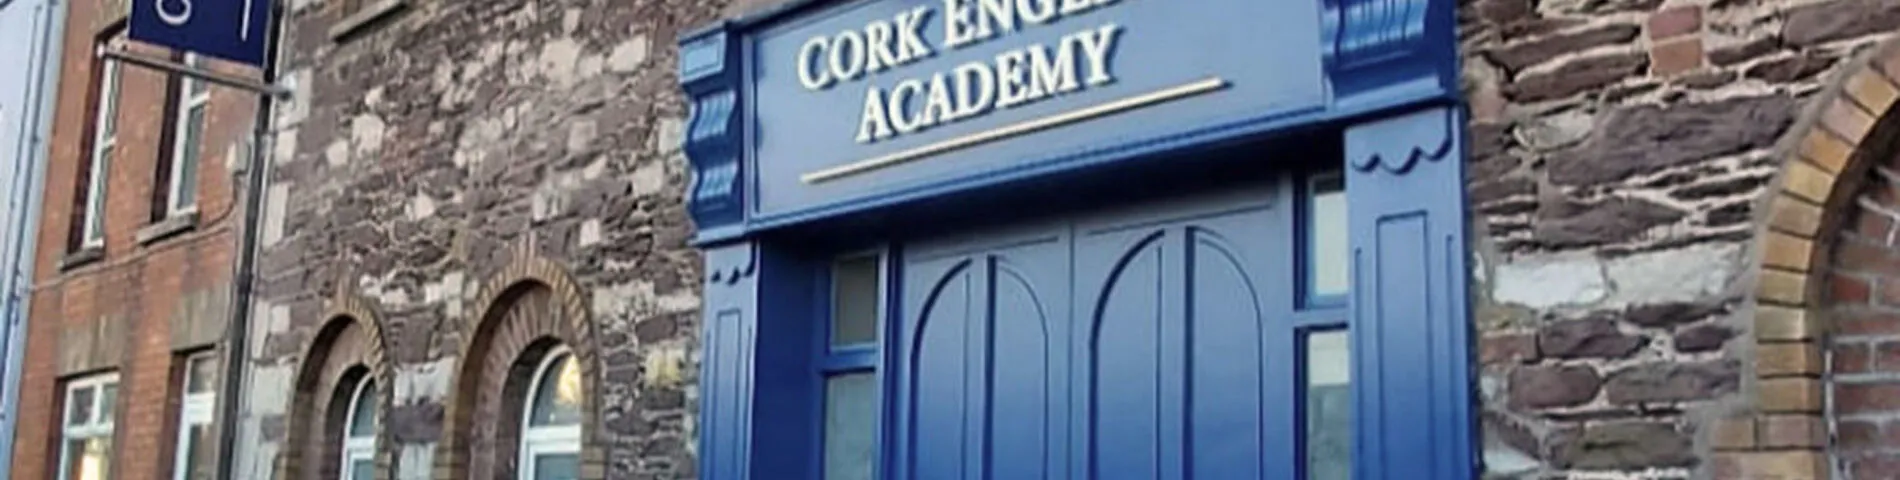 Imatge 1 de l'escola Cork English Academy